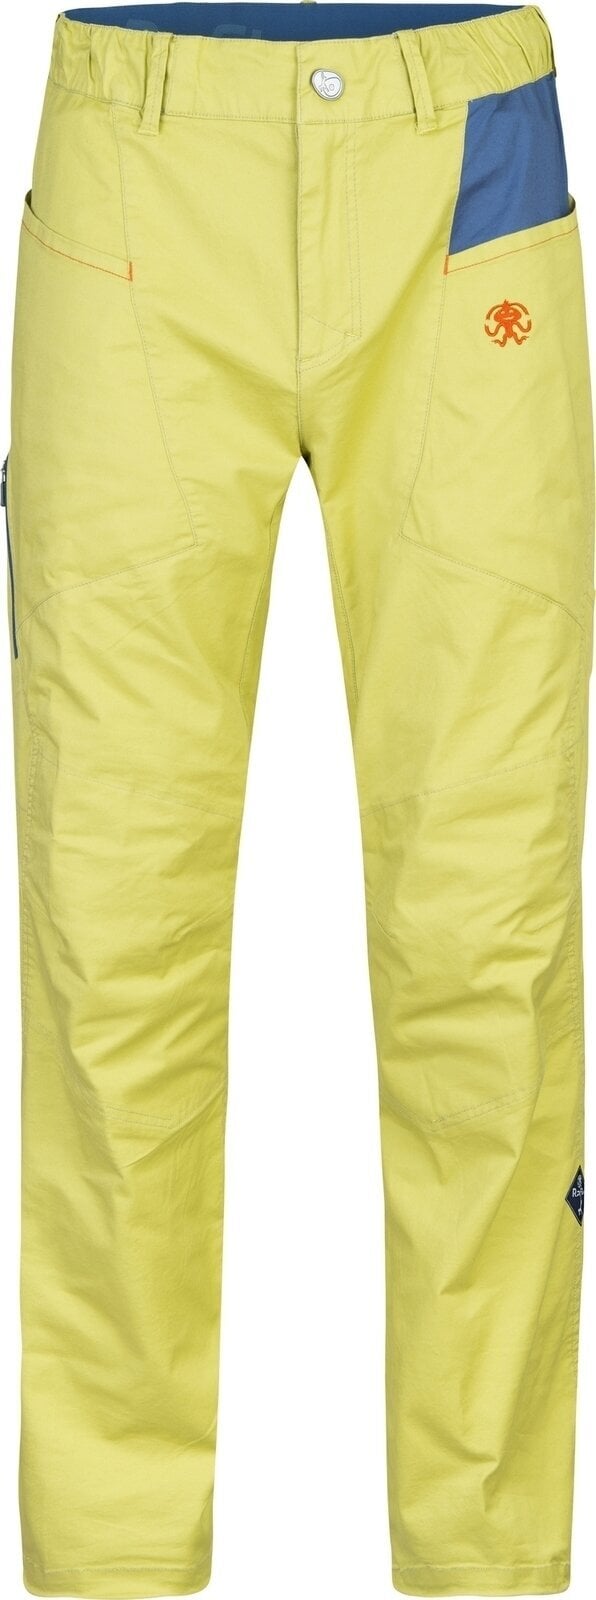 Pantalons outdoor Rafiki Crag Man Pants Cress Green/Ensign S Pantalons outdoor